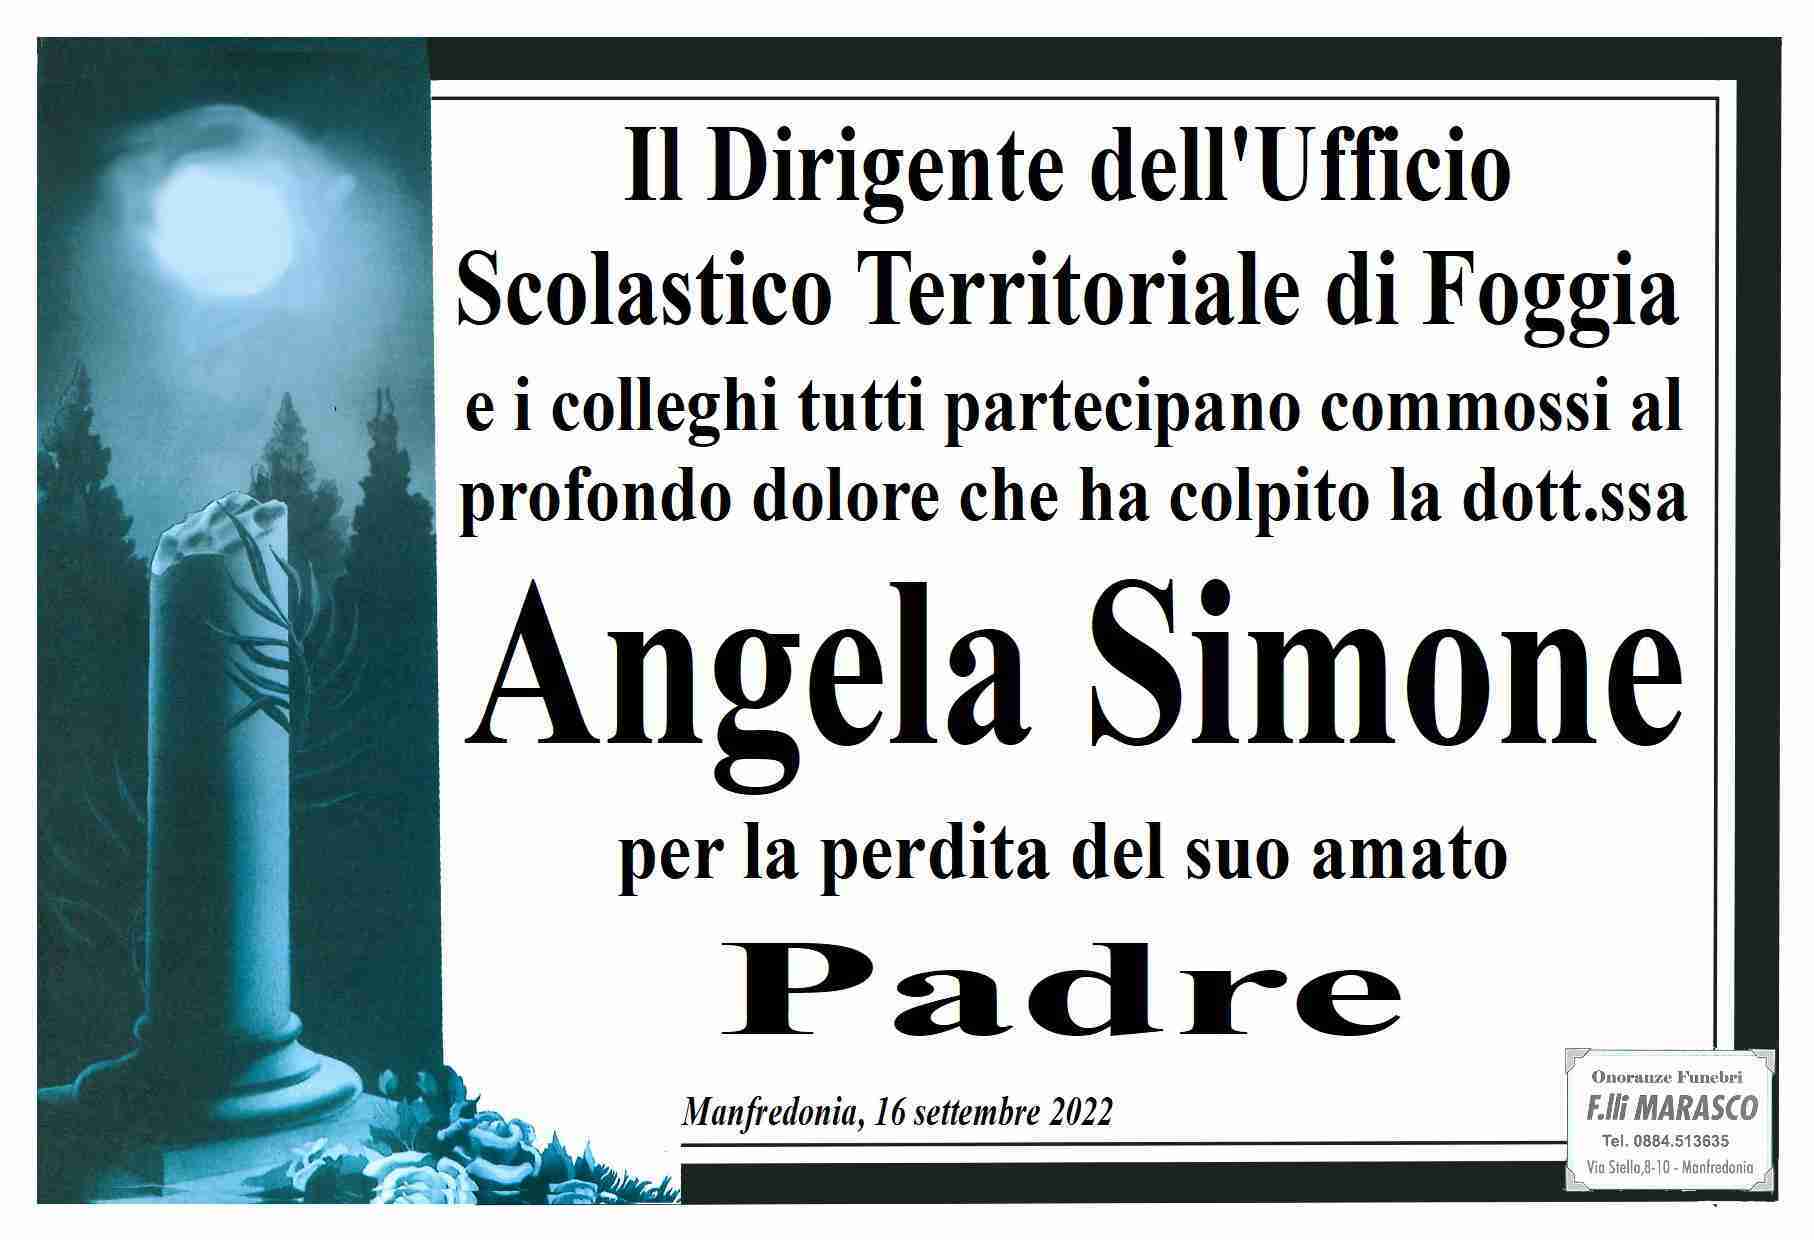 Domenico Salvatore Simone